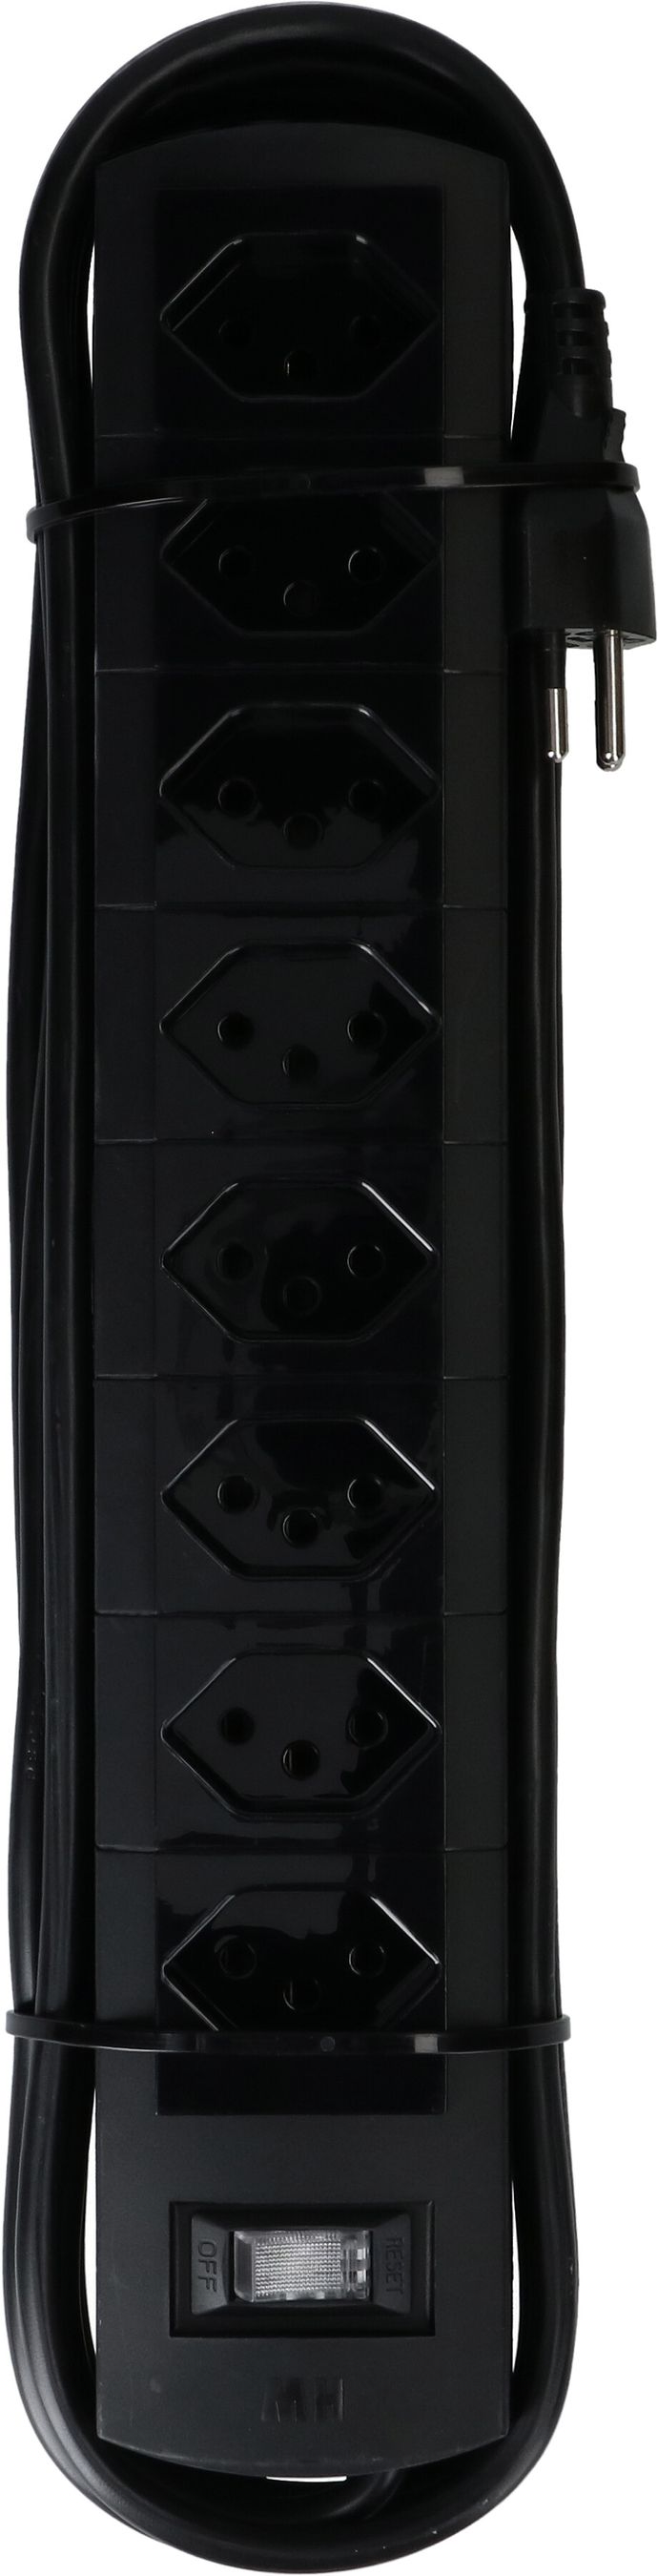 Steckdosenleiste Prime Line 8x Typ 13 schwarz Schalter 5m